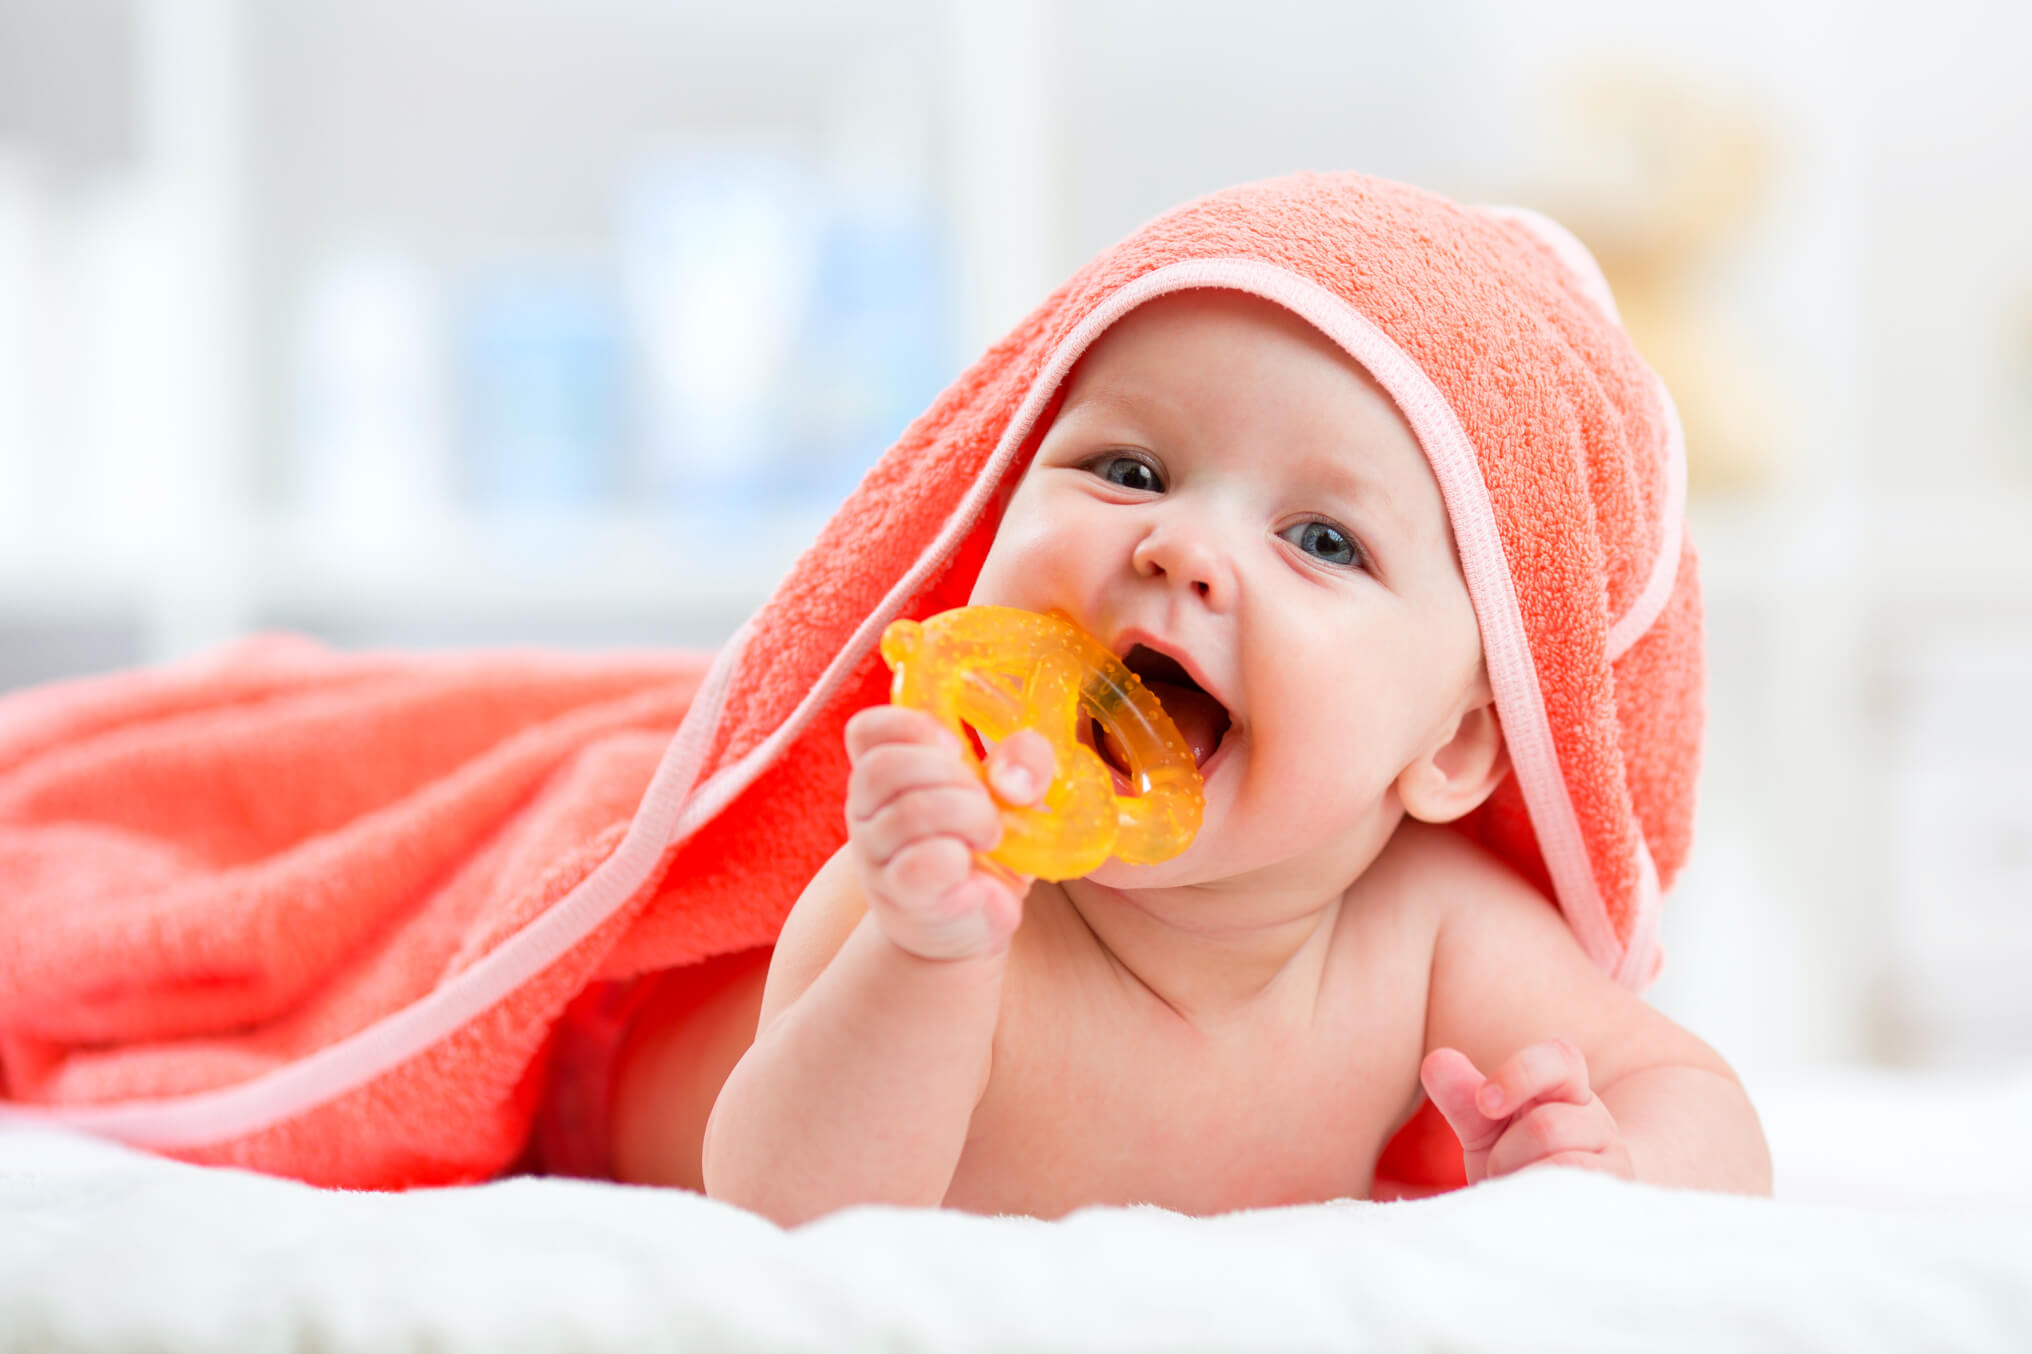 Fotografie novorozence cucající hračku v puse, čímž je vystaven infekci rotaviru.